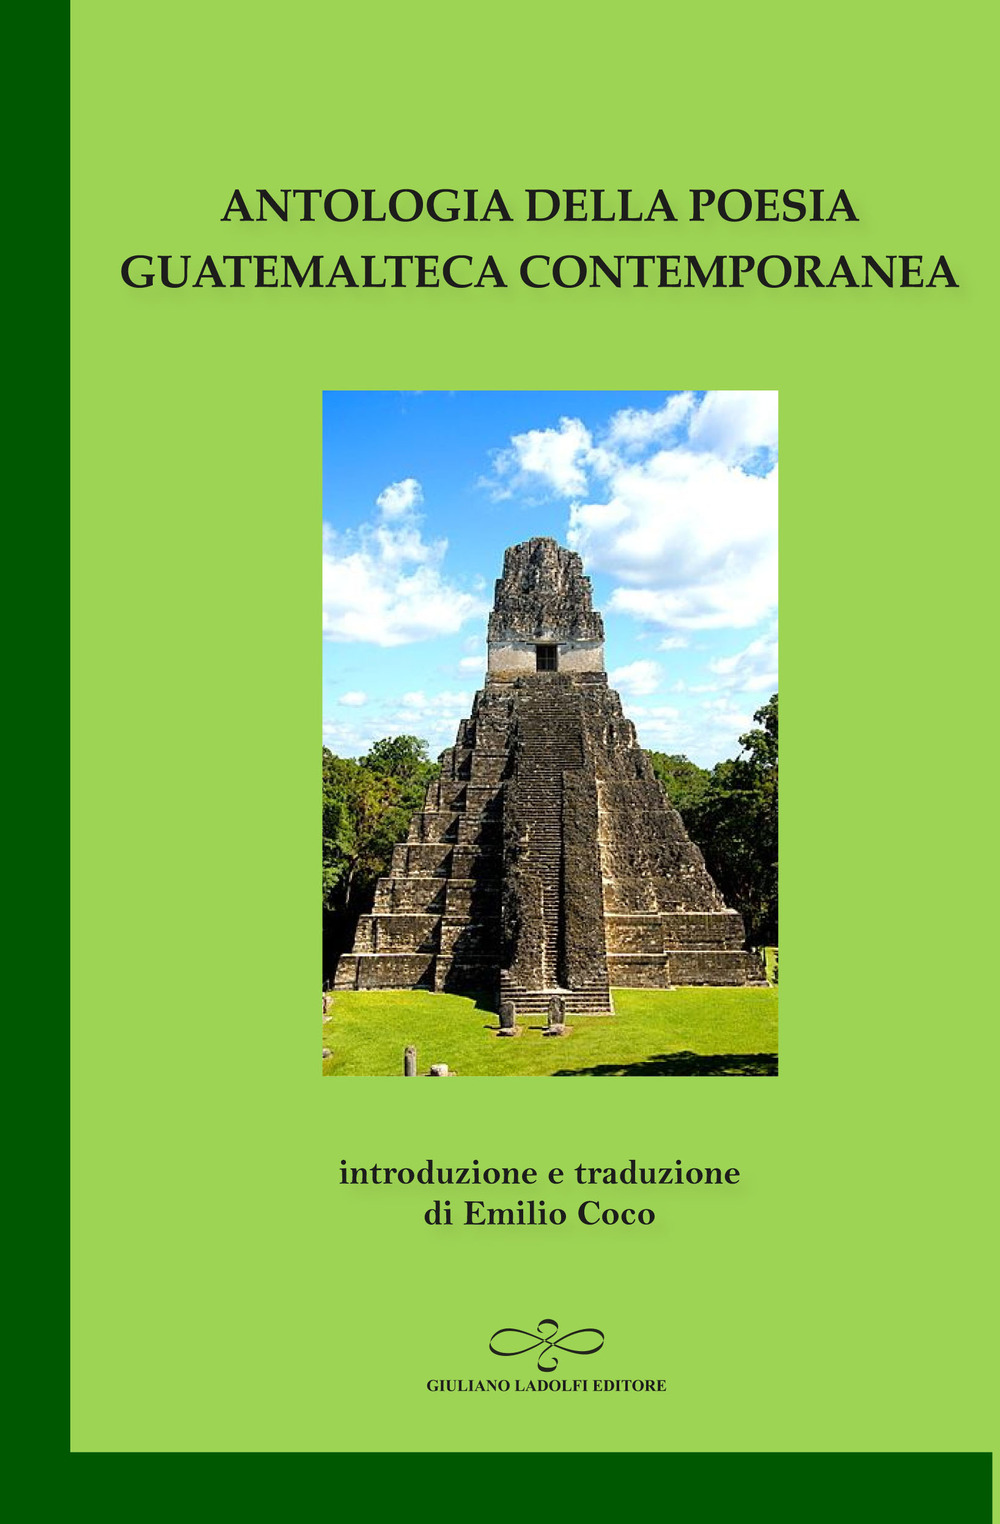 Antologia della poesia guatemalteca contemporanea